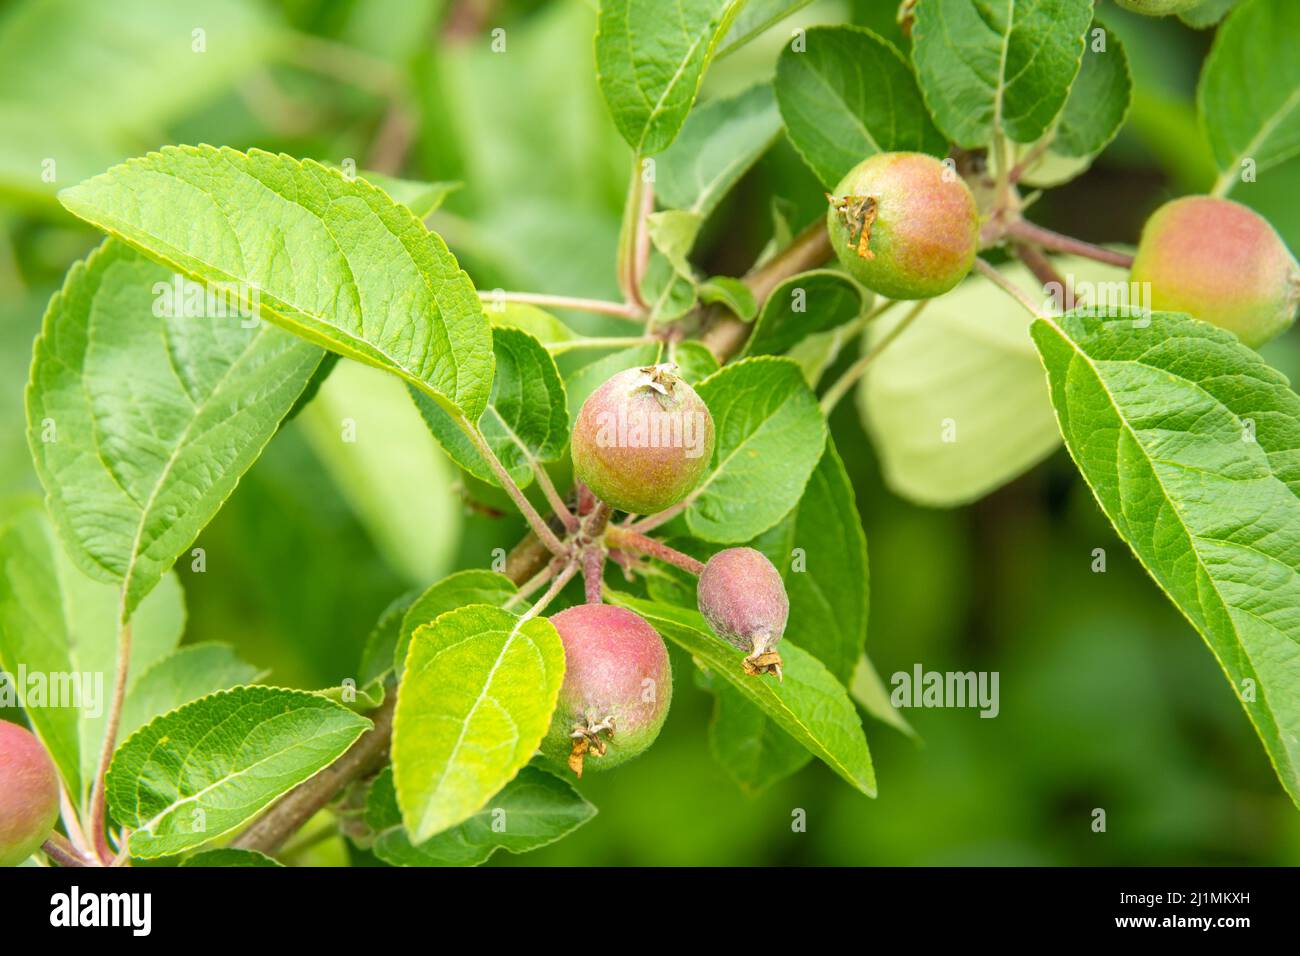 développement des fruits de pomme et protection des fruits contre les maladies et les ravageurs, ainsi que la nutrition et l'arrosage des plantes en temps opportun pour le devel de fruit favorable Banque D'Images